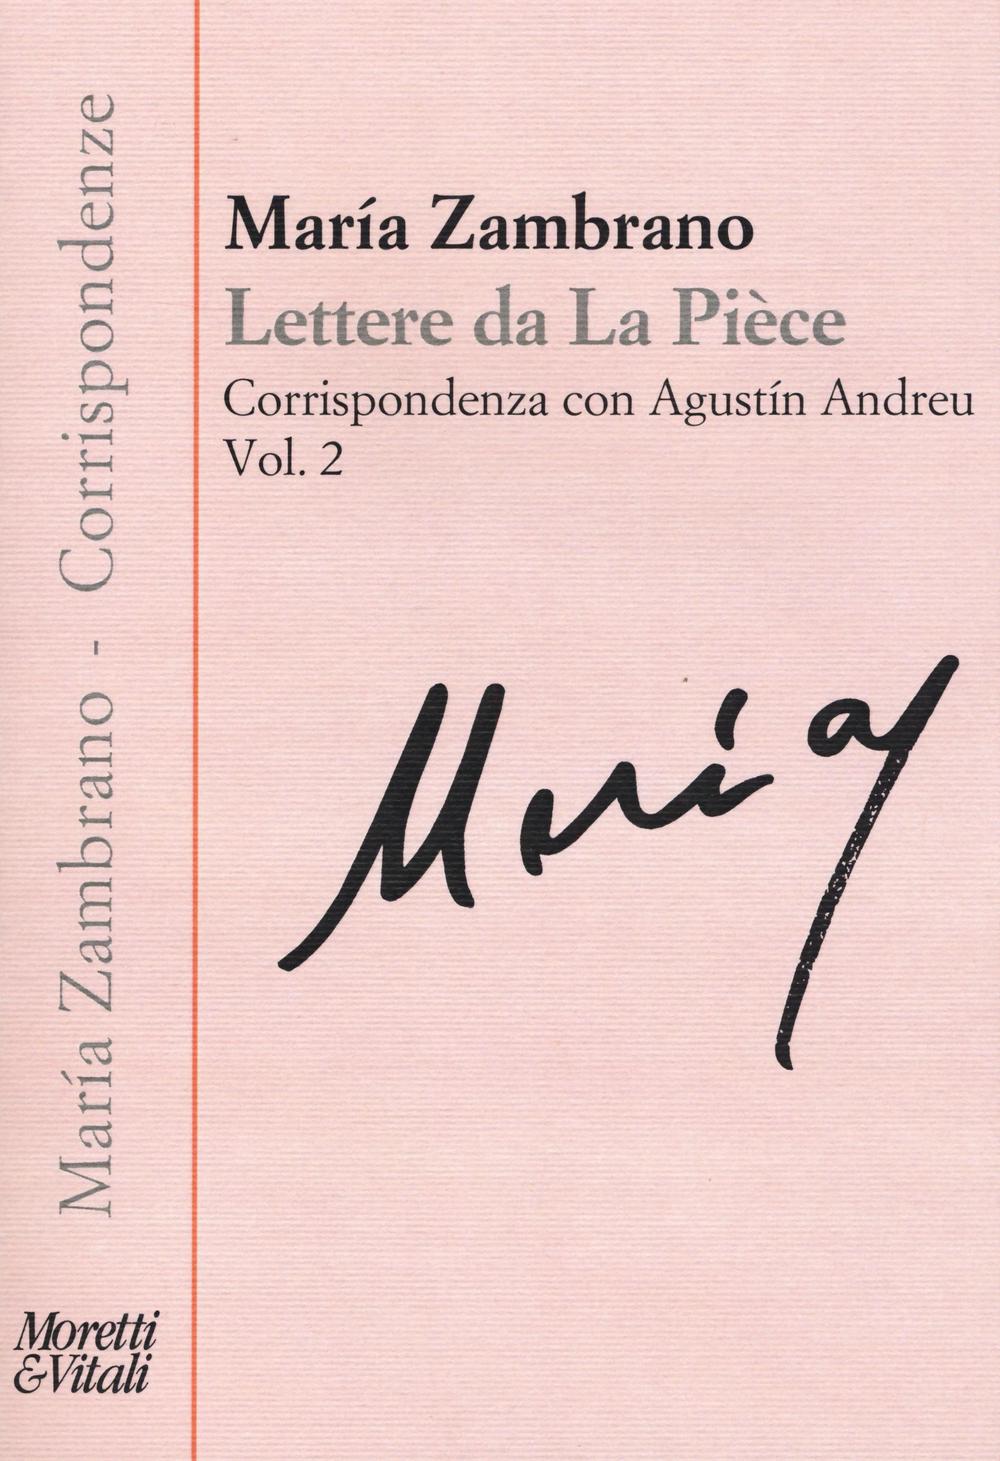 Lettere de la piece. Vol. 2: Corrispondenza con Agustín Andreu